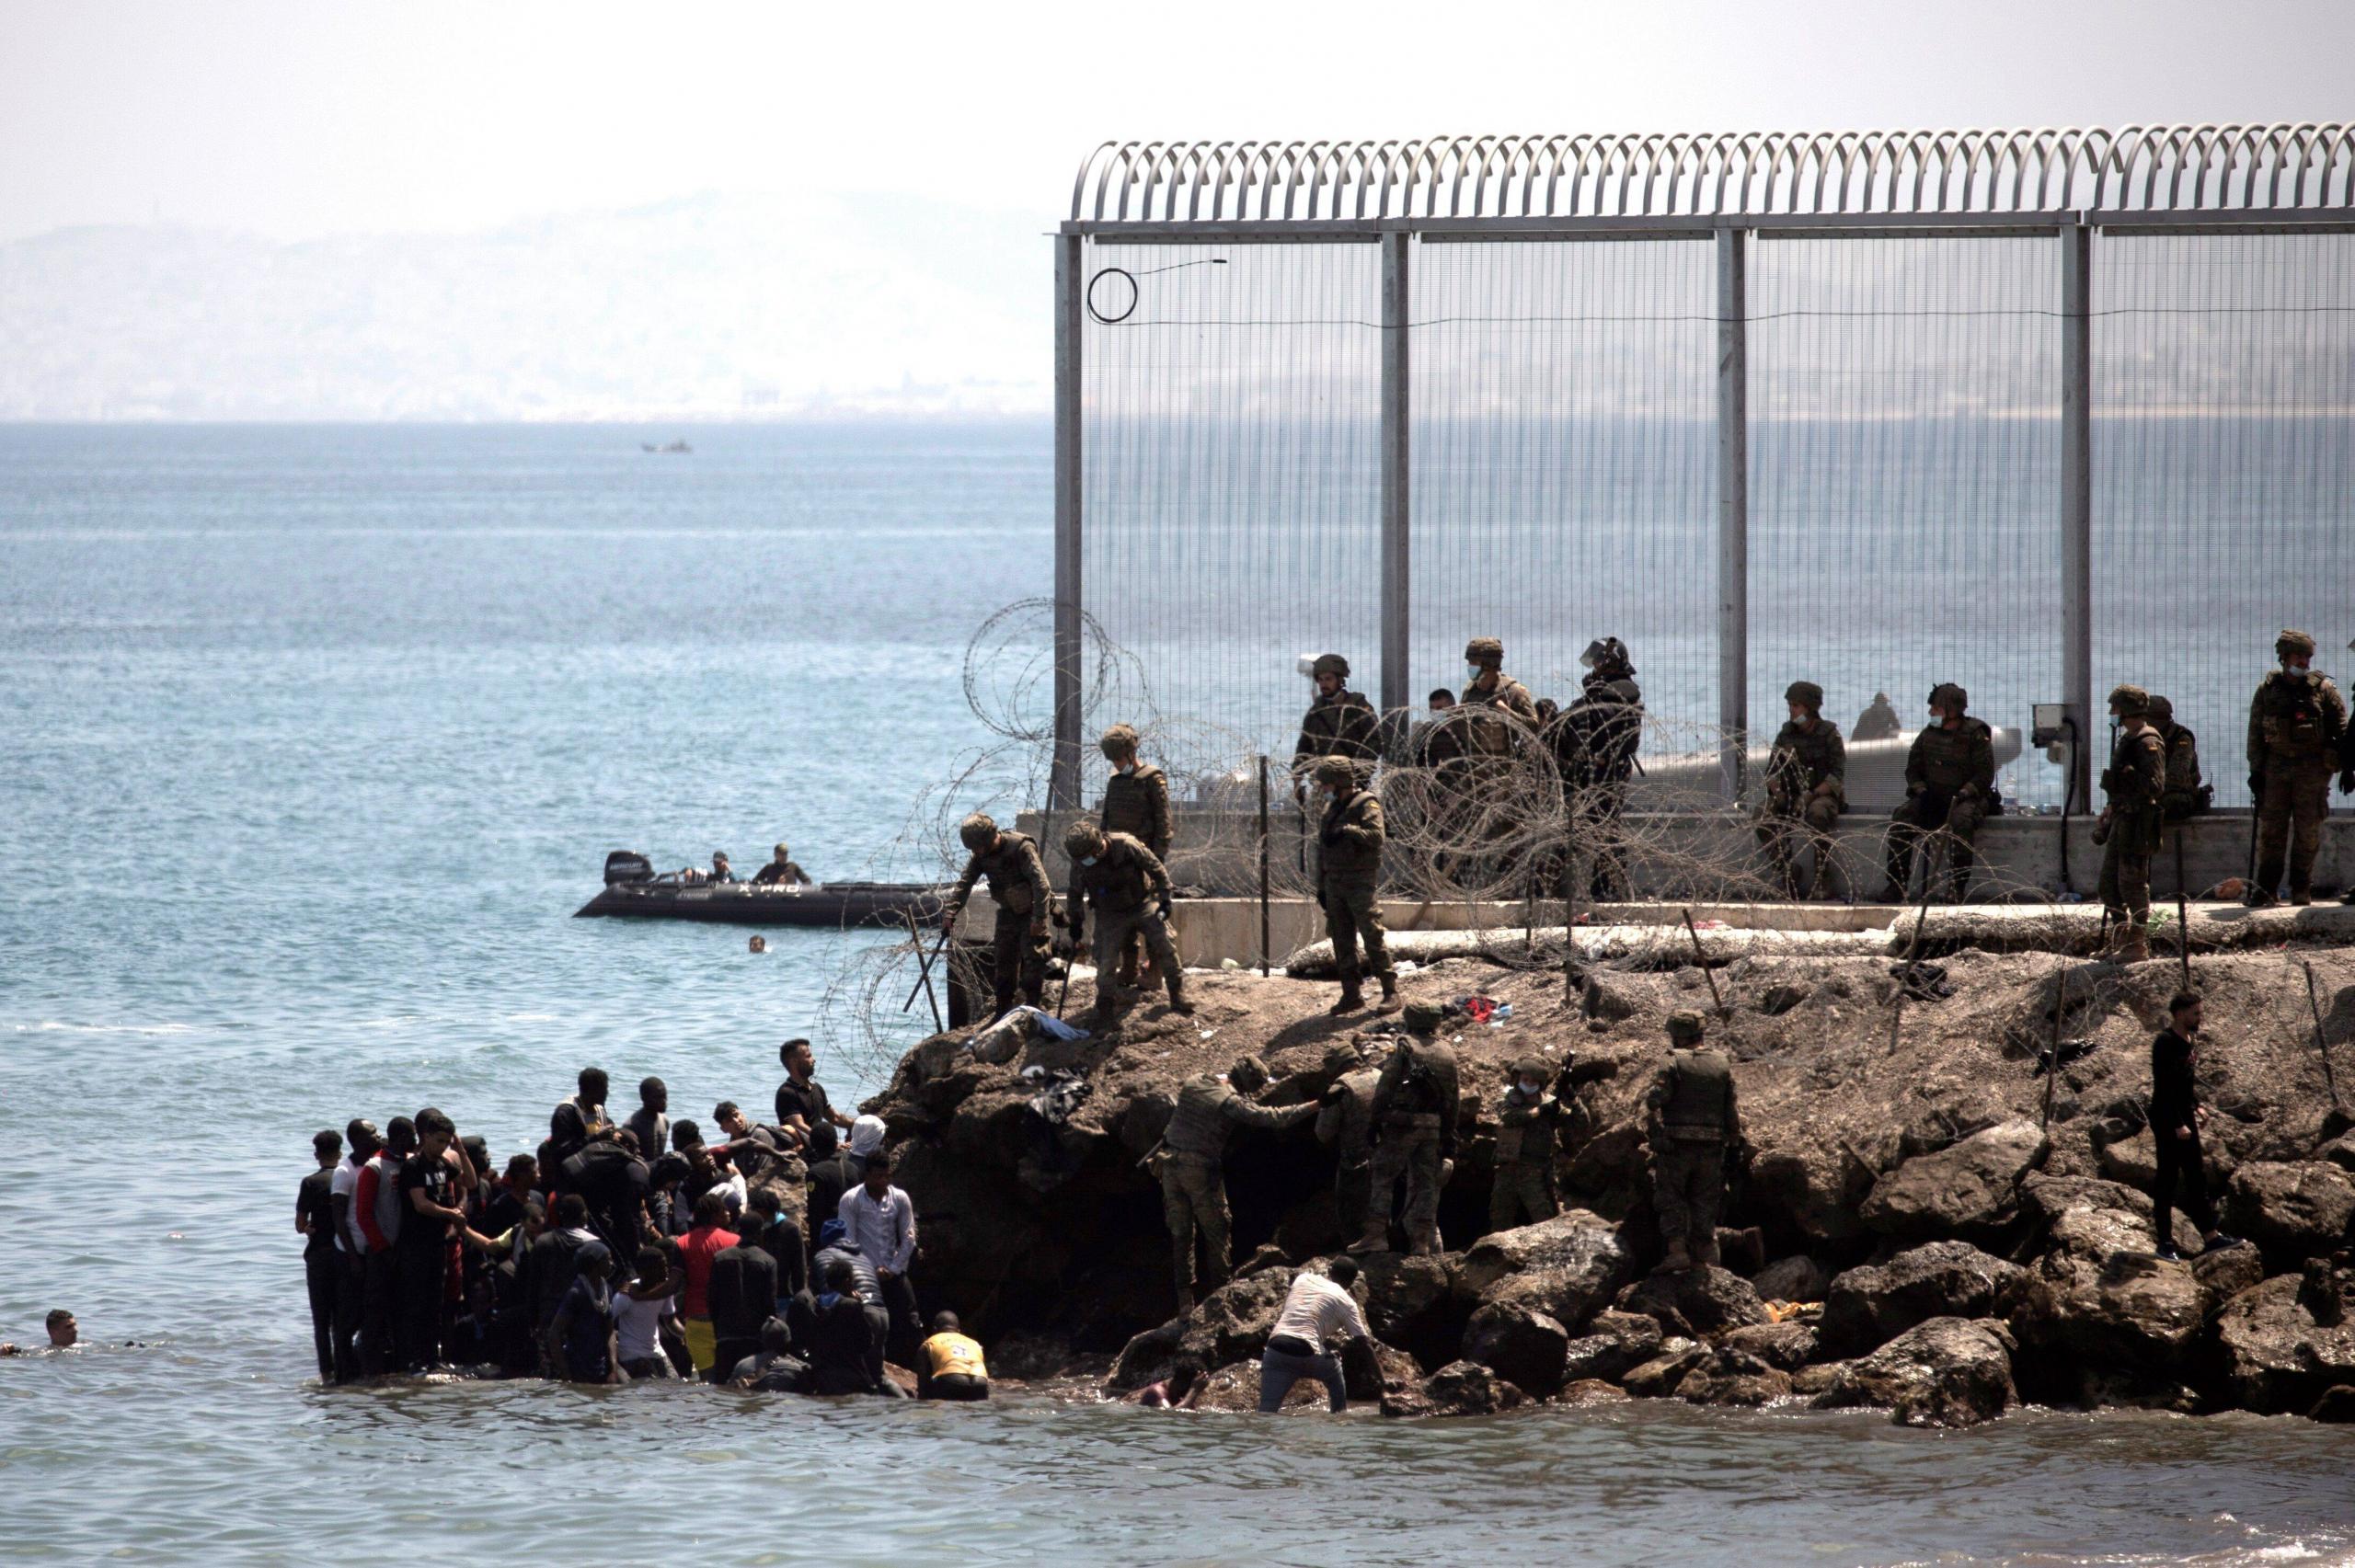 Am 18. Mai 2021 erreichen 5.000 Menschen schwimmend die Küste von Ceuta – und treffen dort auf spanische Soldaten.